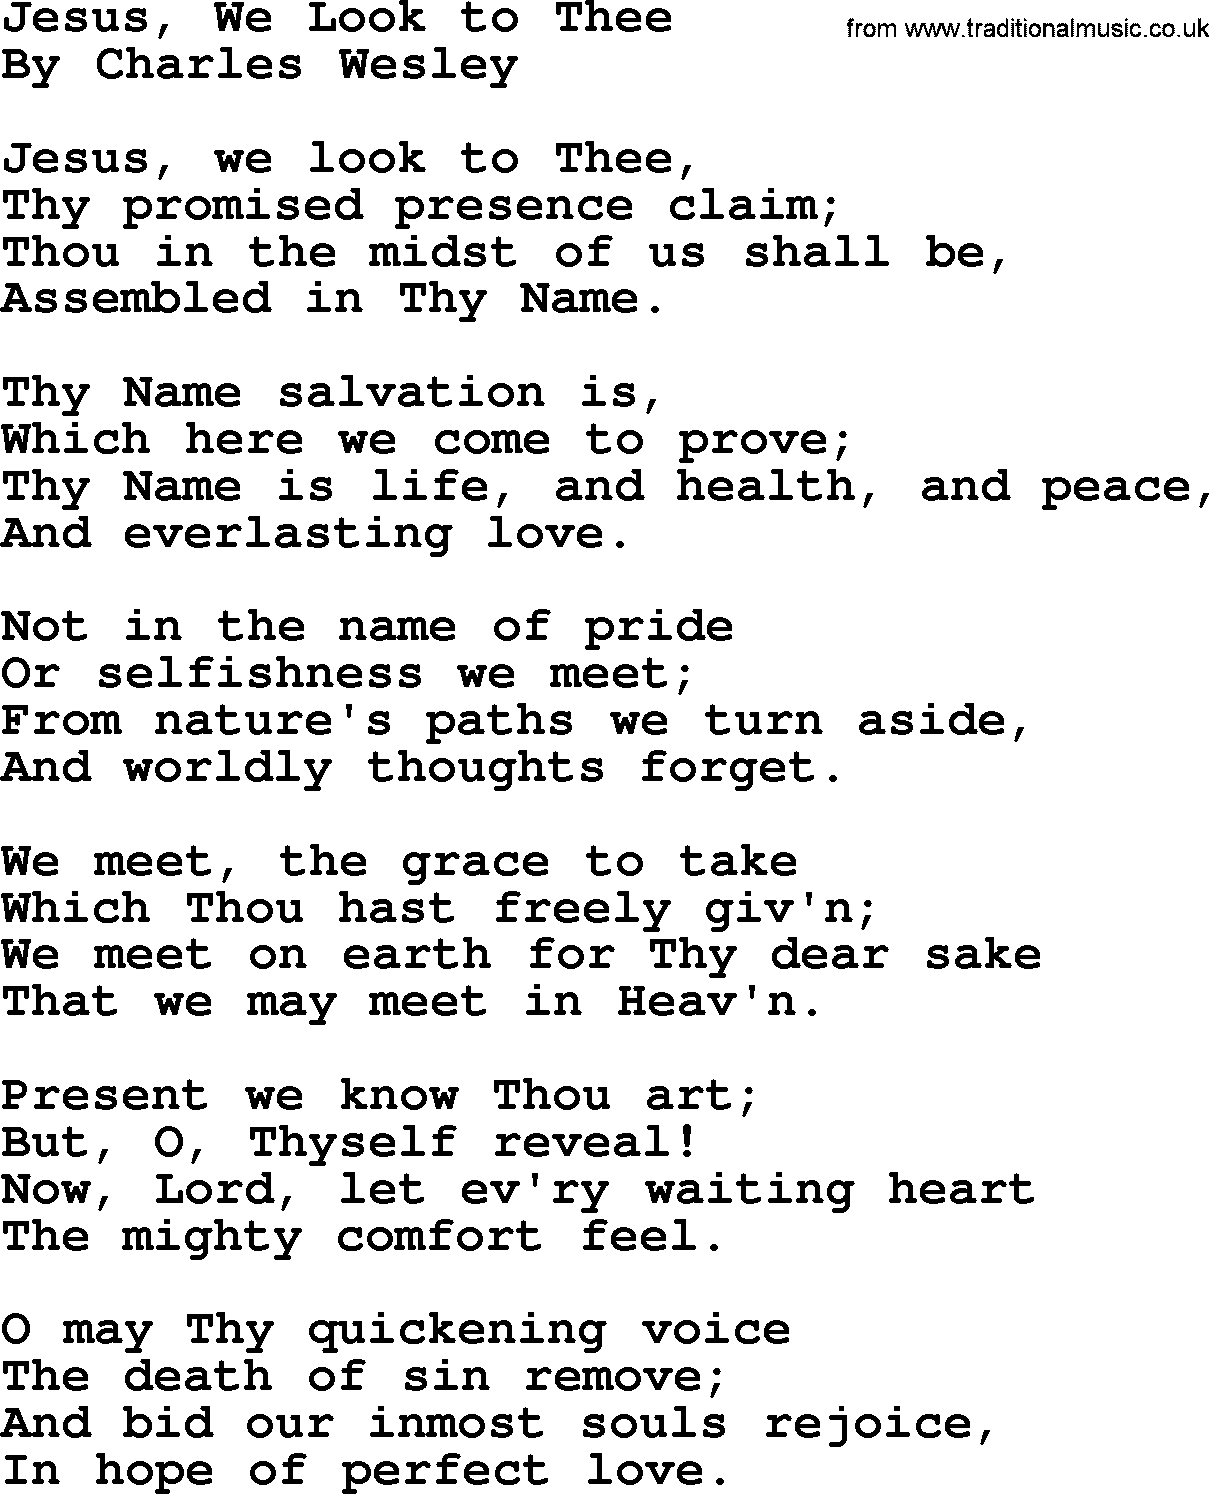 Charles Wesley hymn: Jesus, We Look to Thee, lyrics